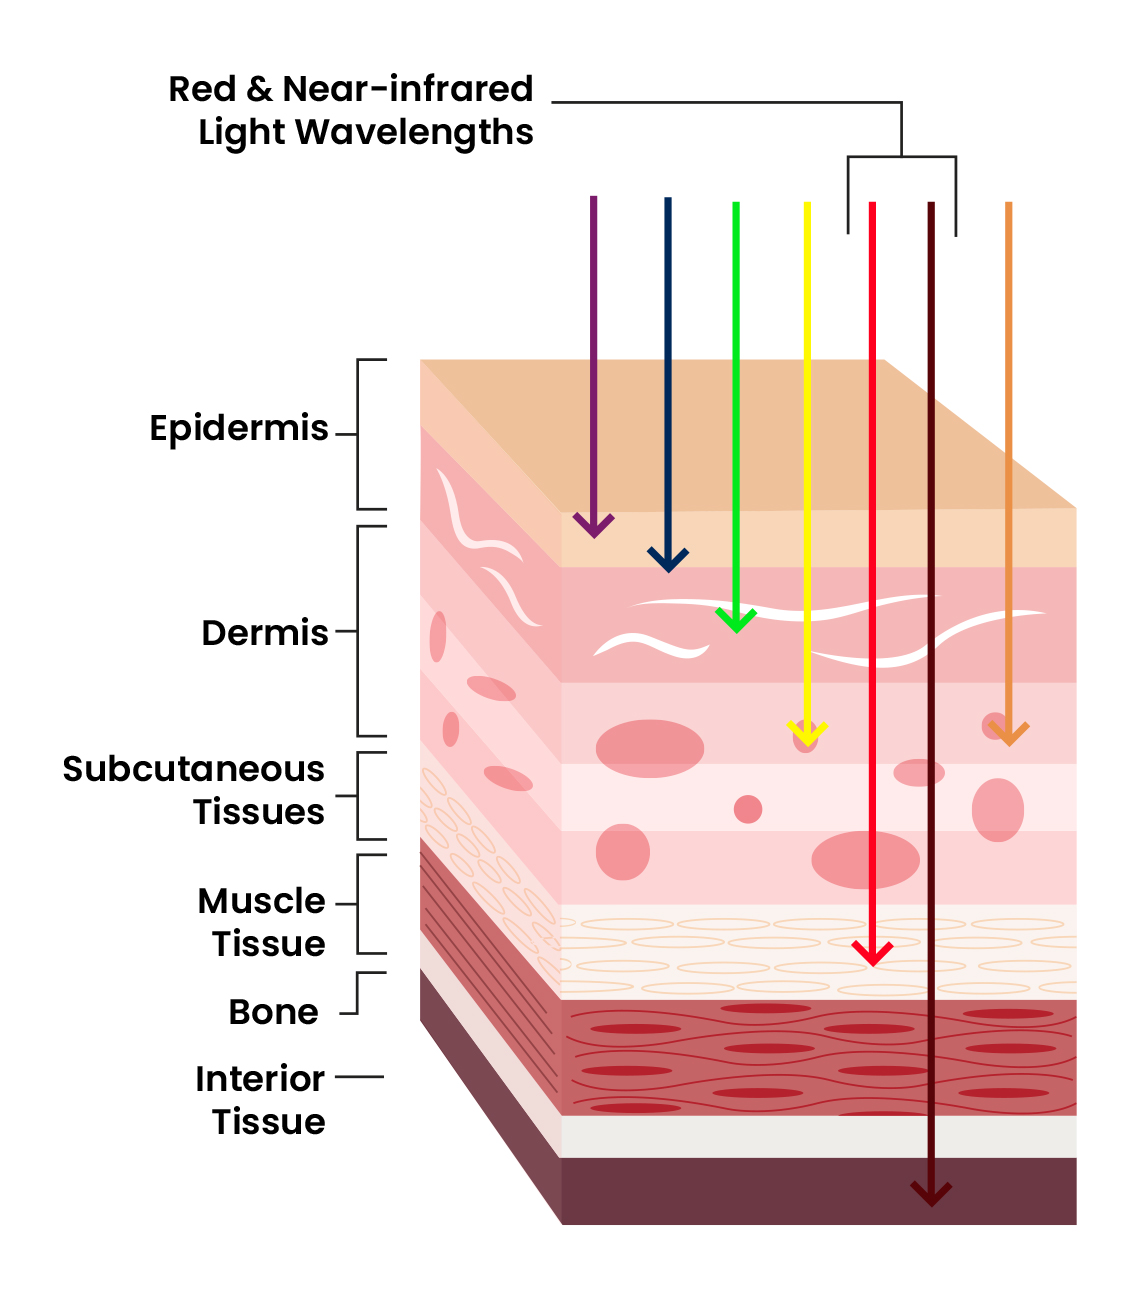 Red Light vs Near Infrared Light Wavelengths